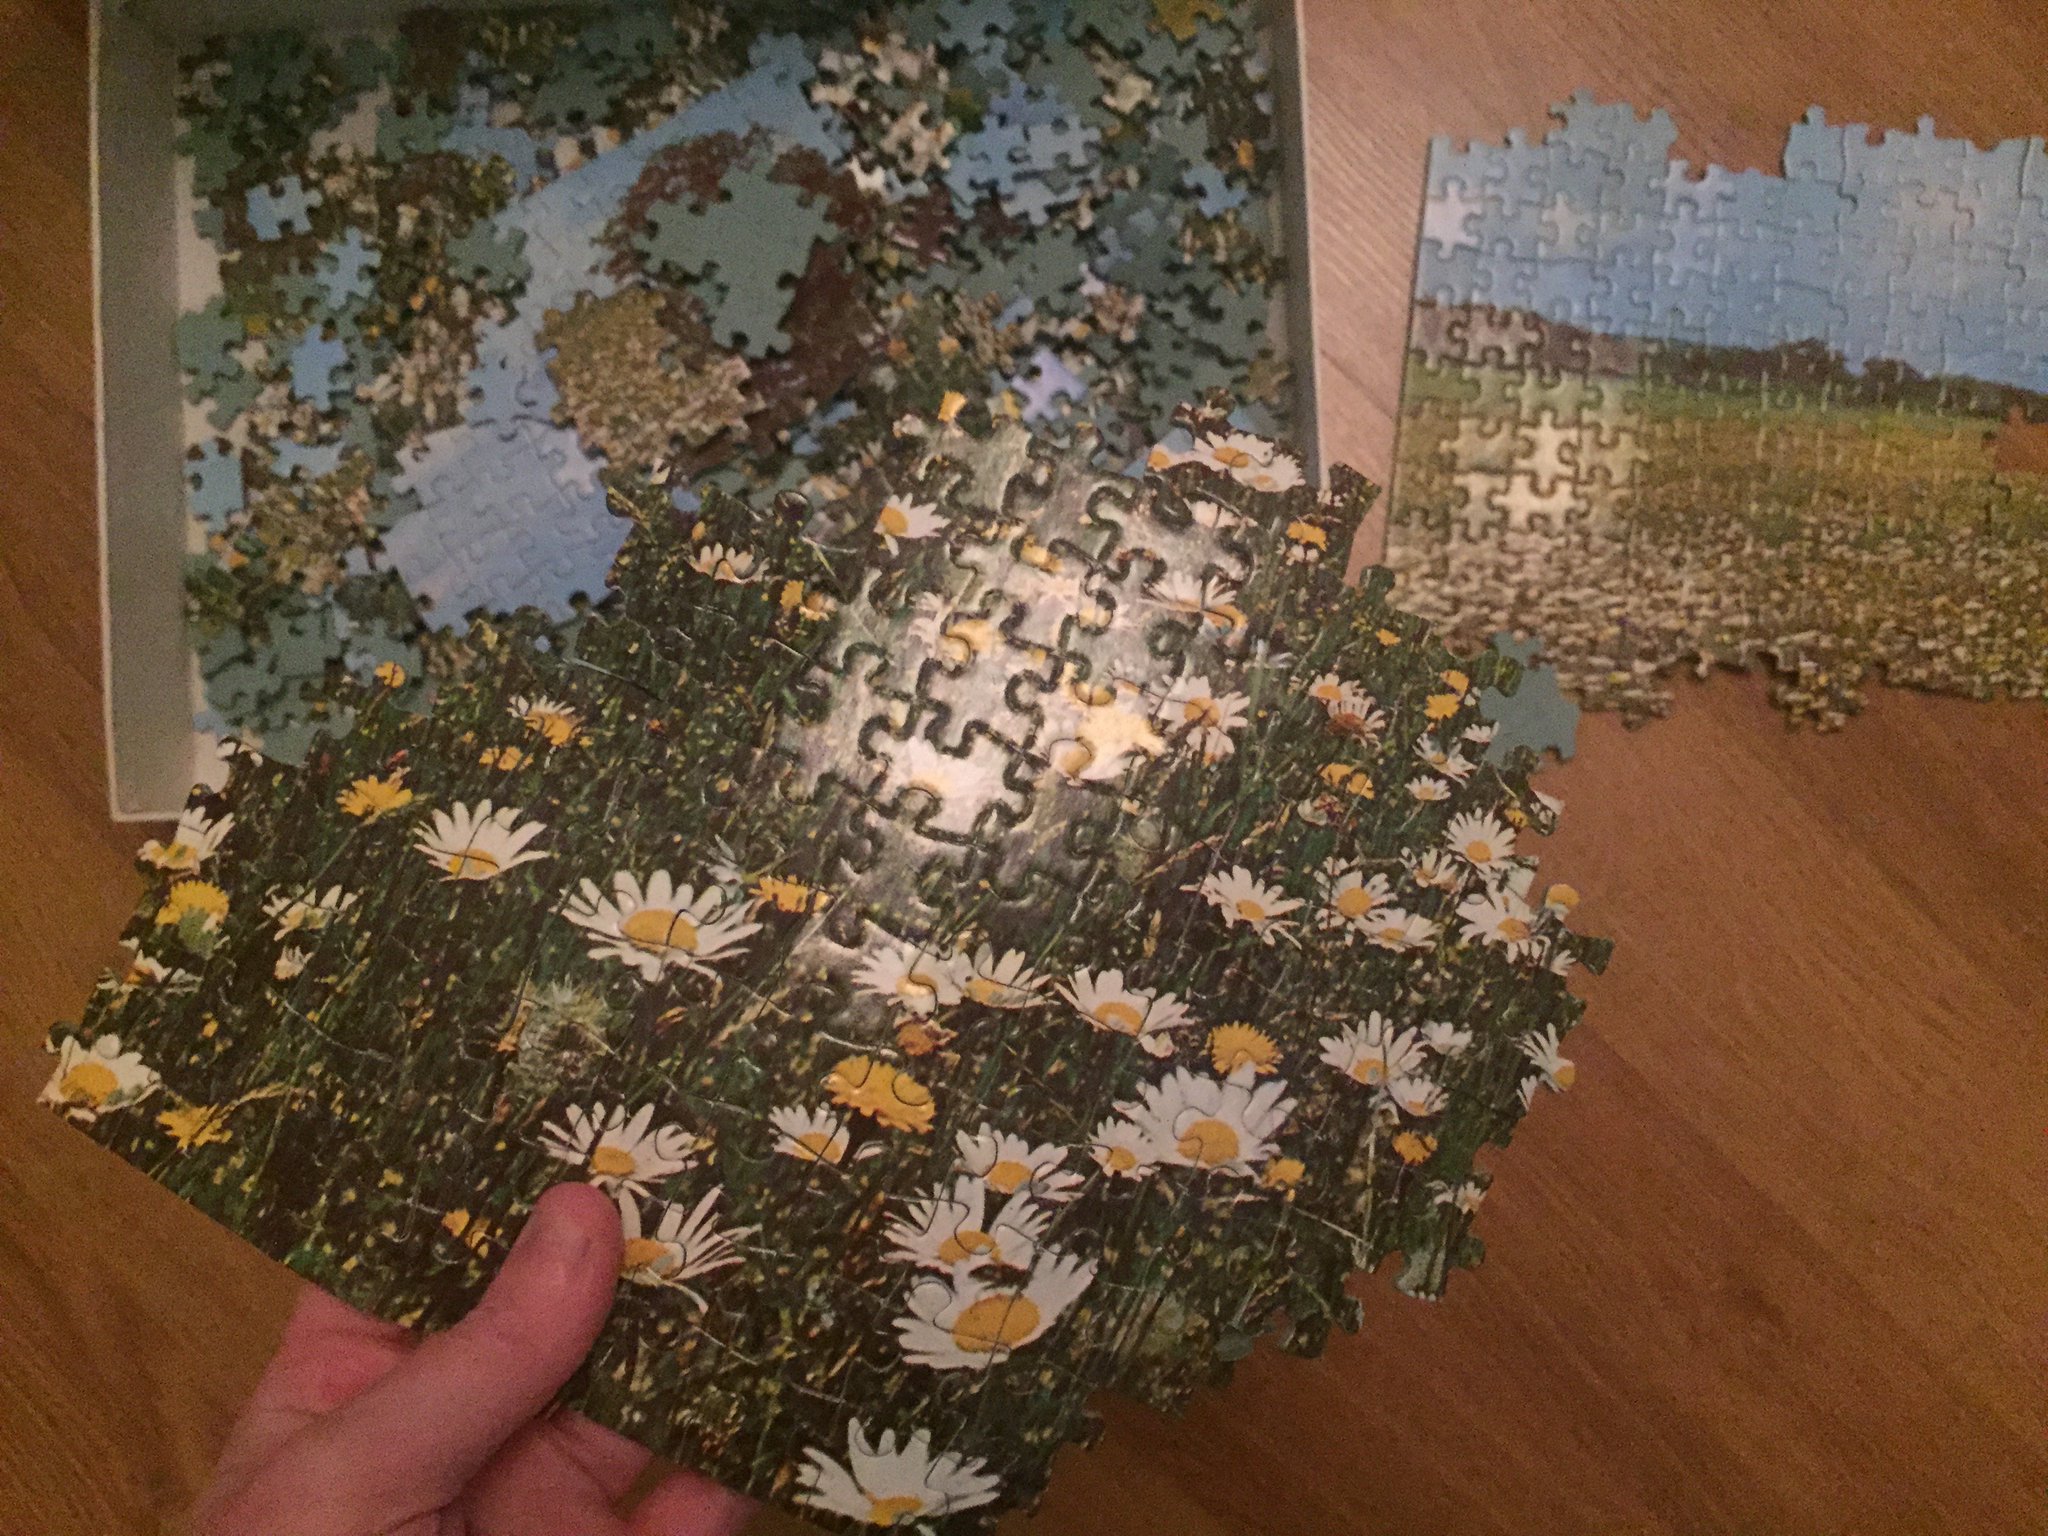 J'ai d'ailleurs fait le puzzle aux marguerites de la cave, certains morceaux étaient déjà prêts dans la boîte https://t.co/UJ1ppiXjAo